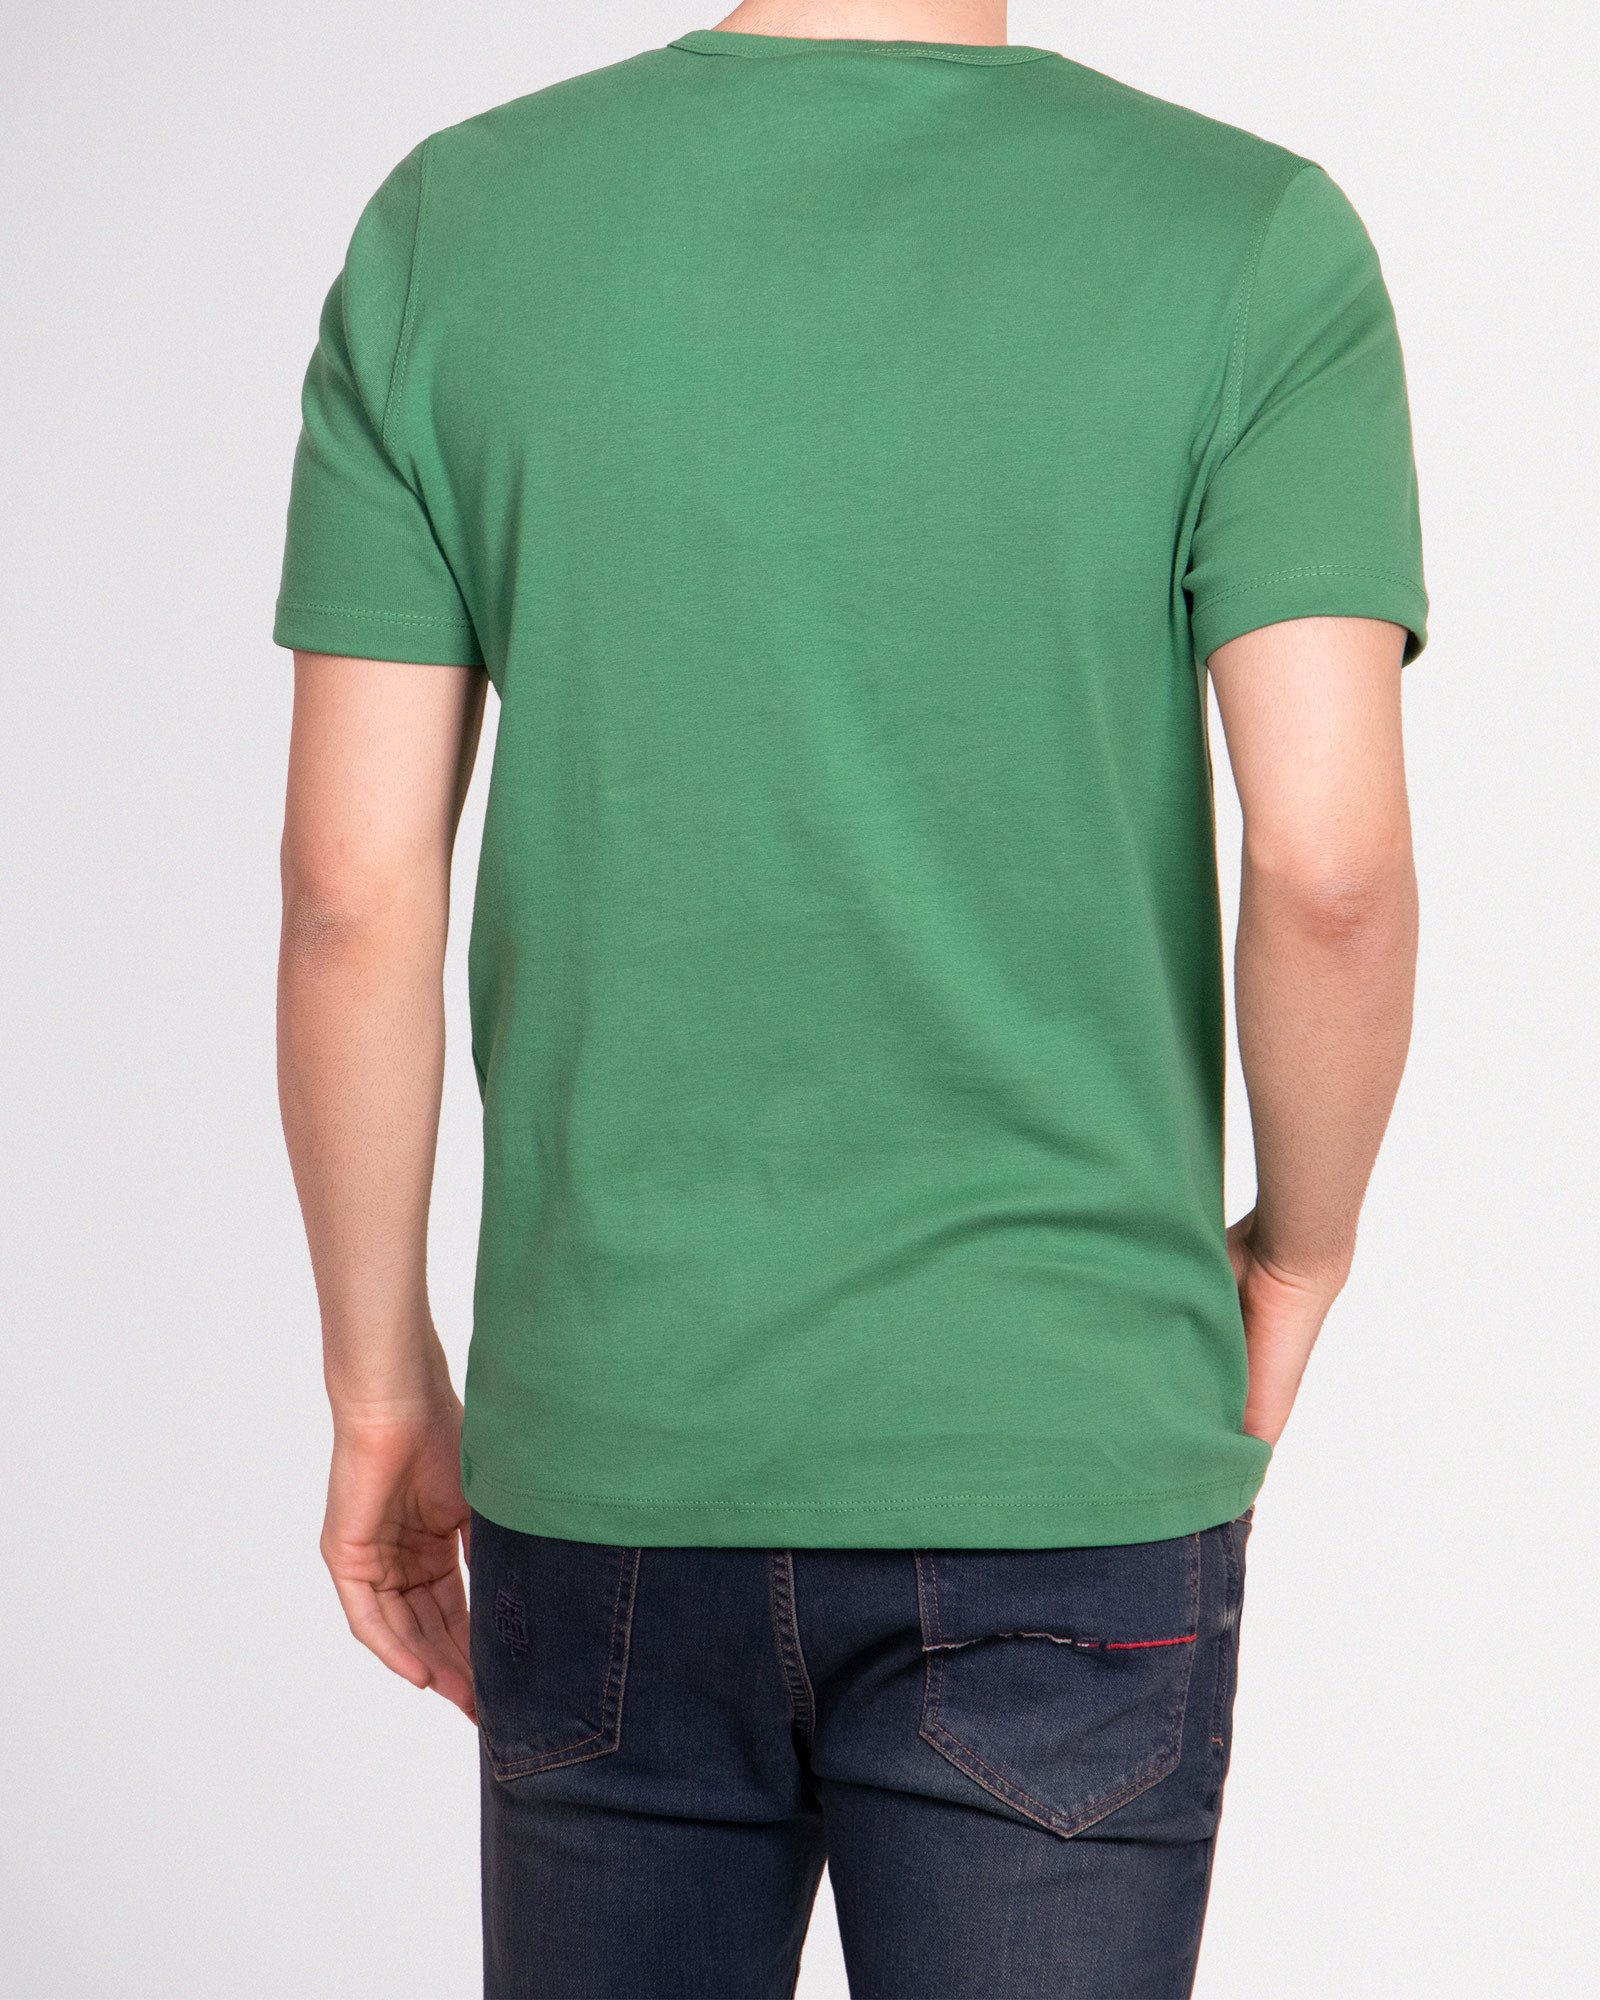 خرید تیشرت آستین کوتاه مردانه ساده سبز 20195102